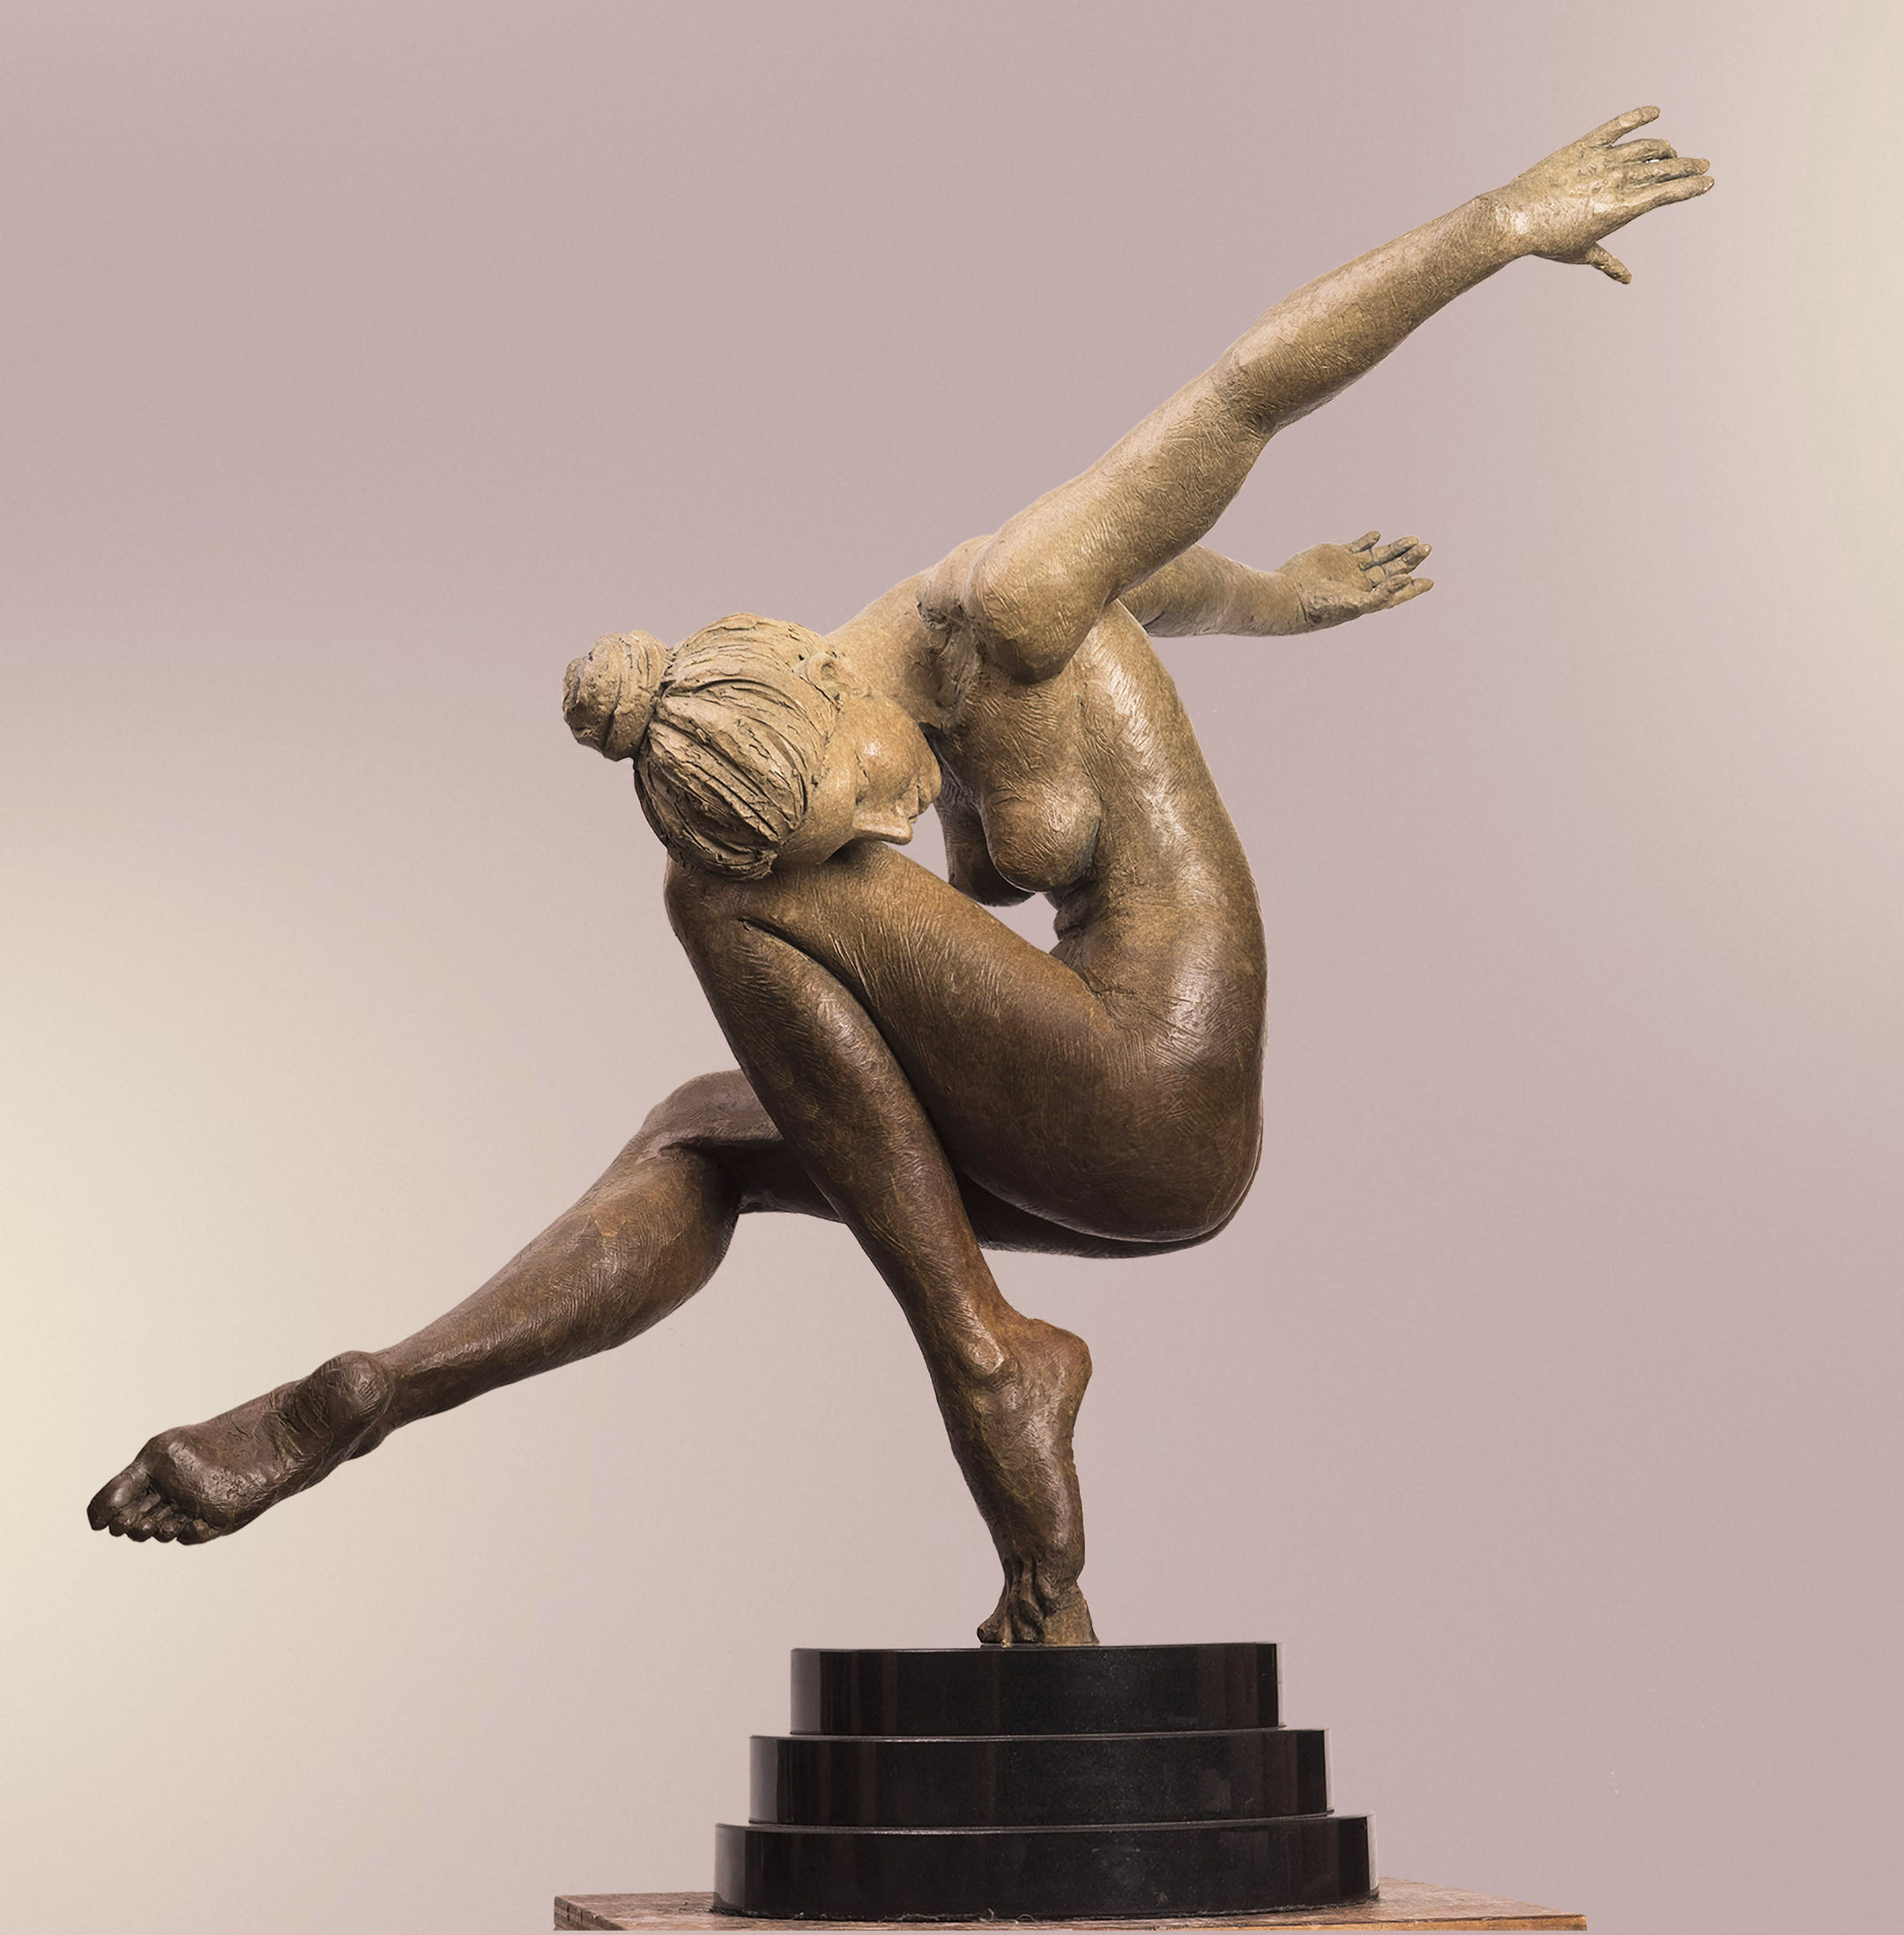 N. TUAN - Repose - bronze sculpture